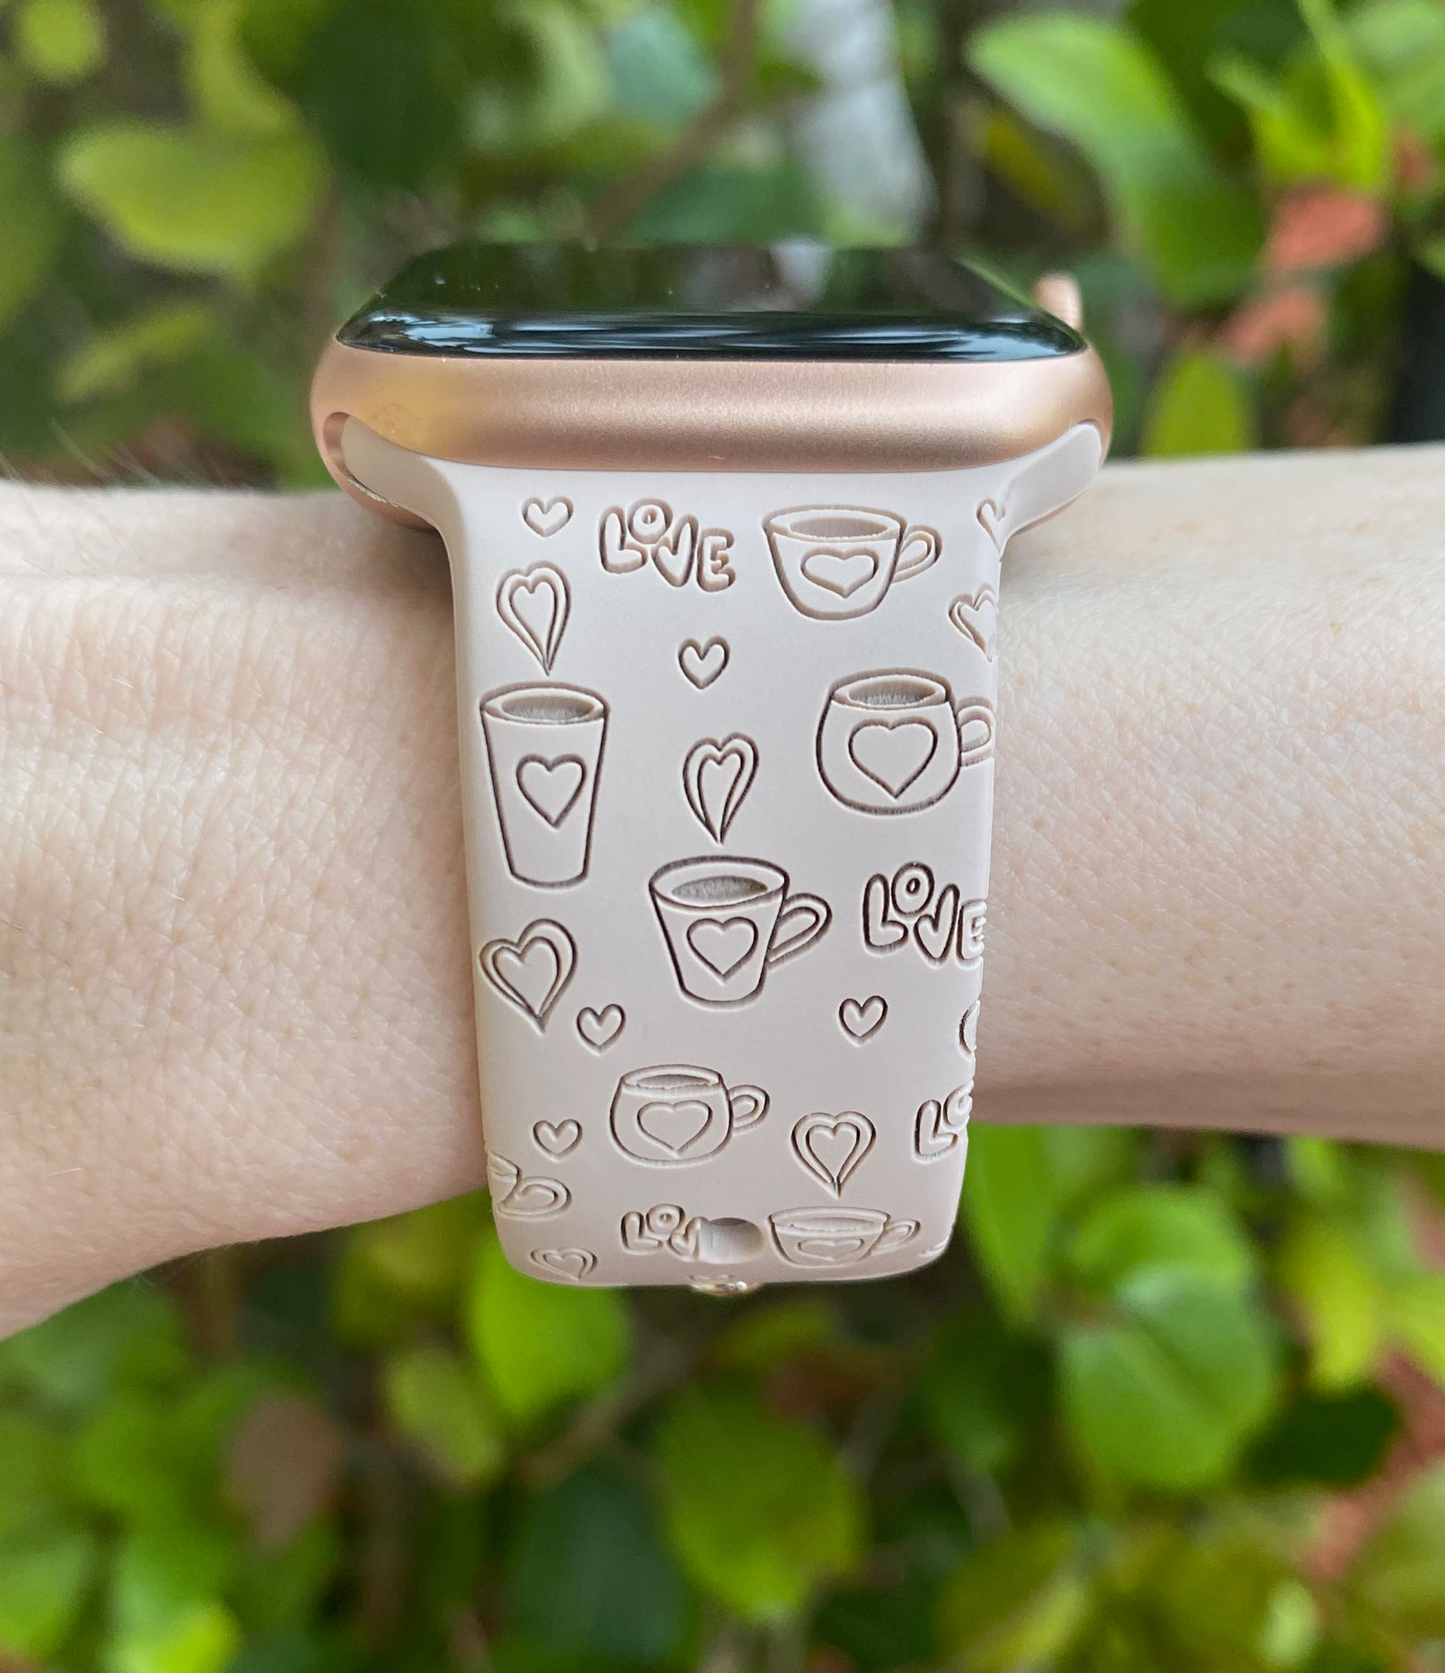 Coffee Love Apple Watch Band